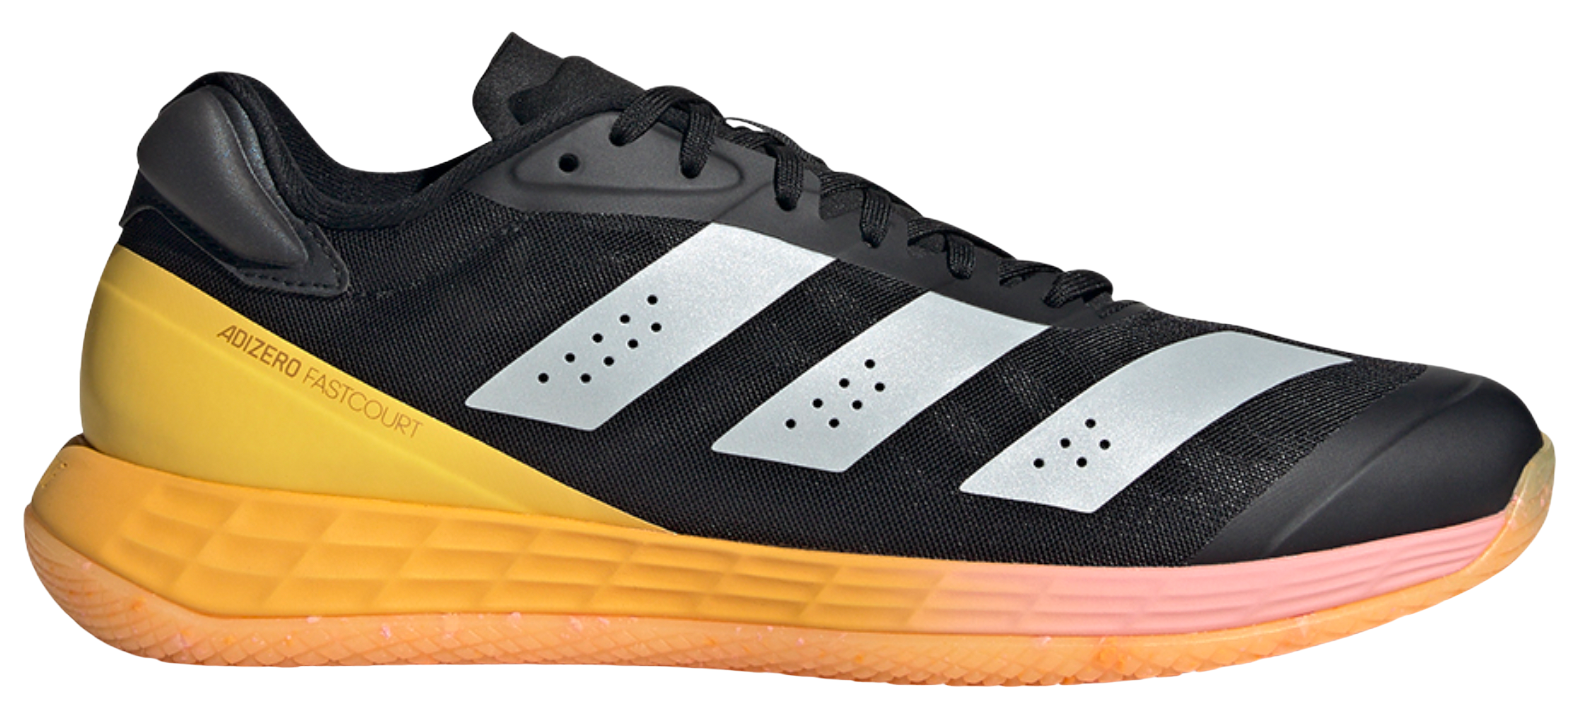 Indoorové topánky adidas Adizero Fastcourt 2.0 W